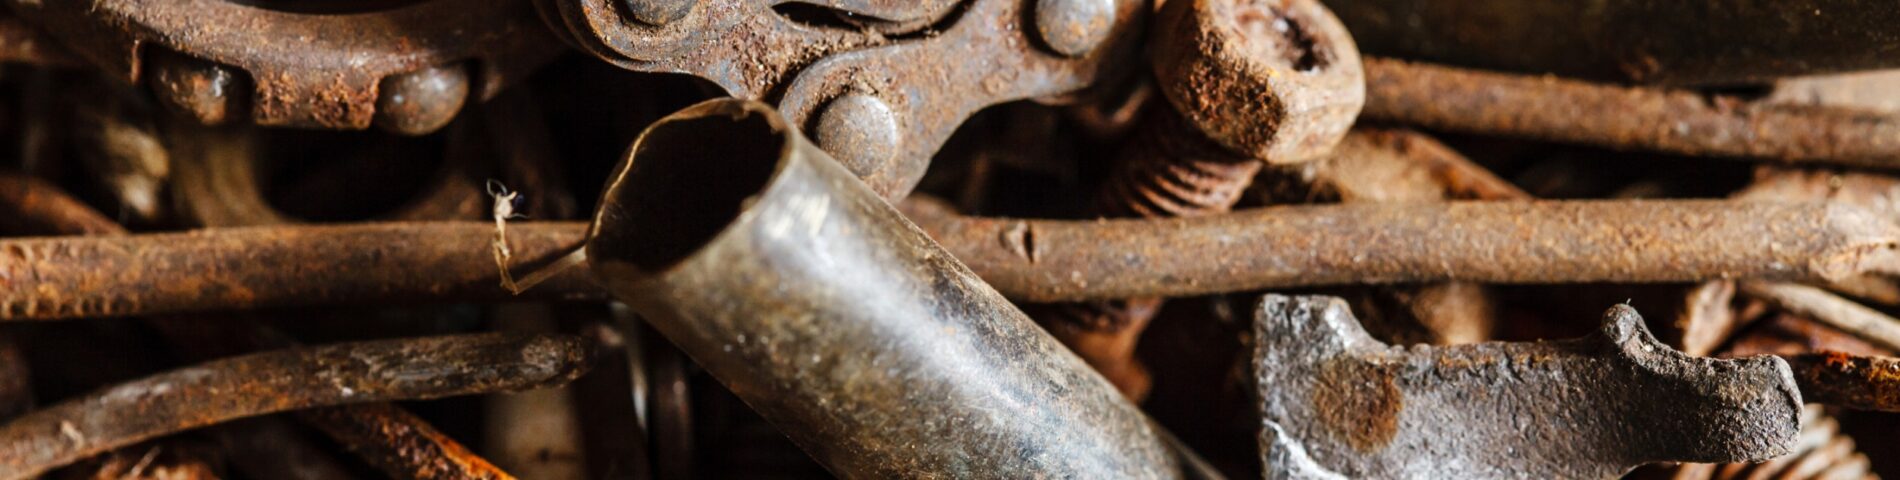 Tornillos, tuercas y herramientas oxidadas